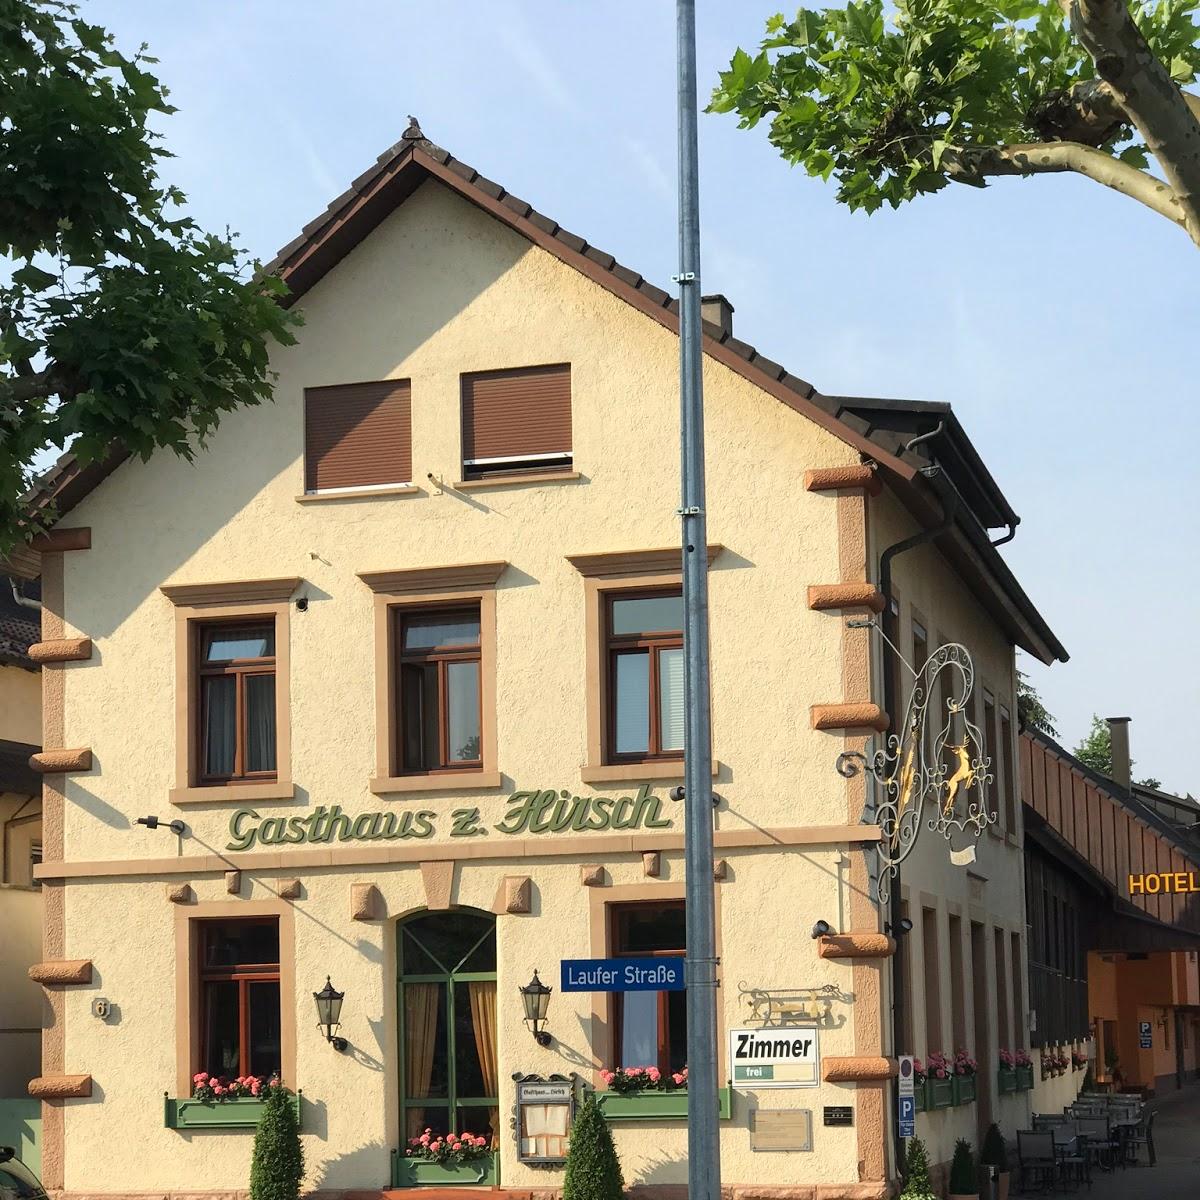 Restaurant "Gasthaus zum Hirsch" in Ottersweier